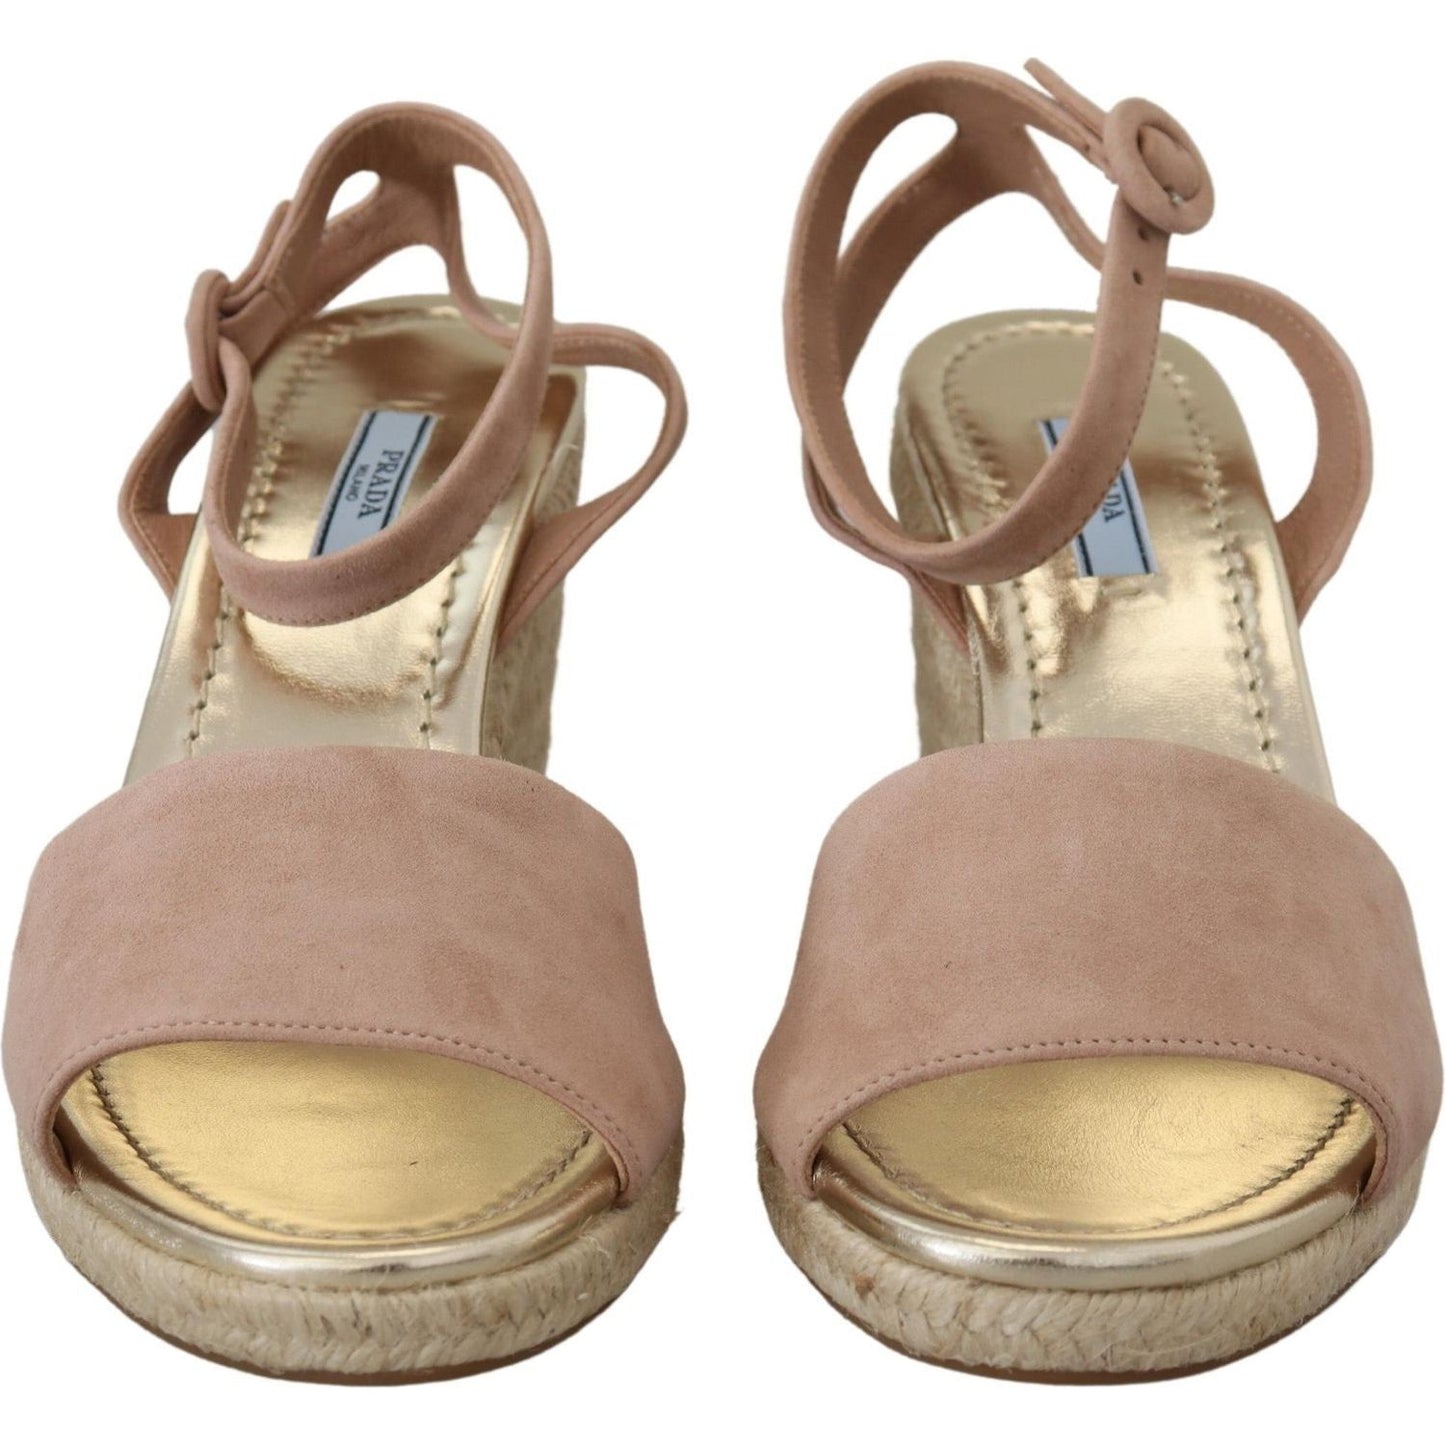 Prada Elegant Suede Ankle Strap Wedge Sandals pink-suede-leather-ankle-strap-sandals IMG_8316-1-f517e98c-8d3.jpg